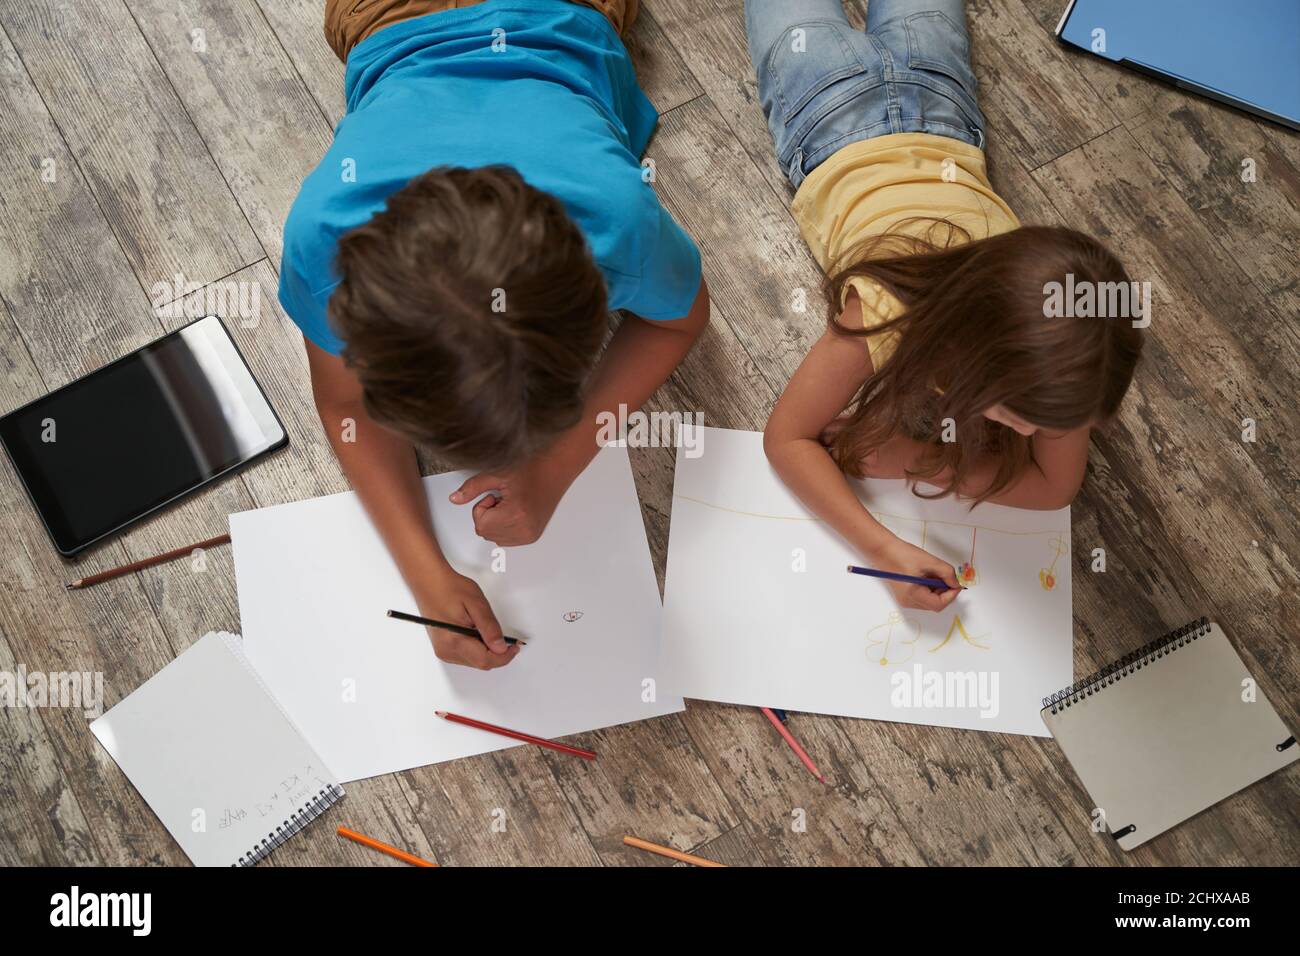 Fratelli che giocano insieme a casa. Vista dall'alto del ragazzino e della ragazza che giacciono sul pavimento di legno e disegnano su fogli bianchi di carta con colorato Foto Stock